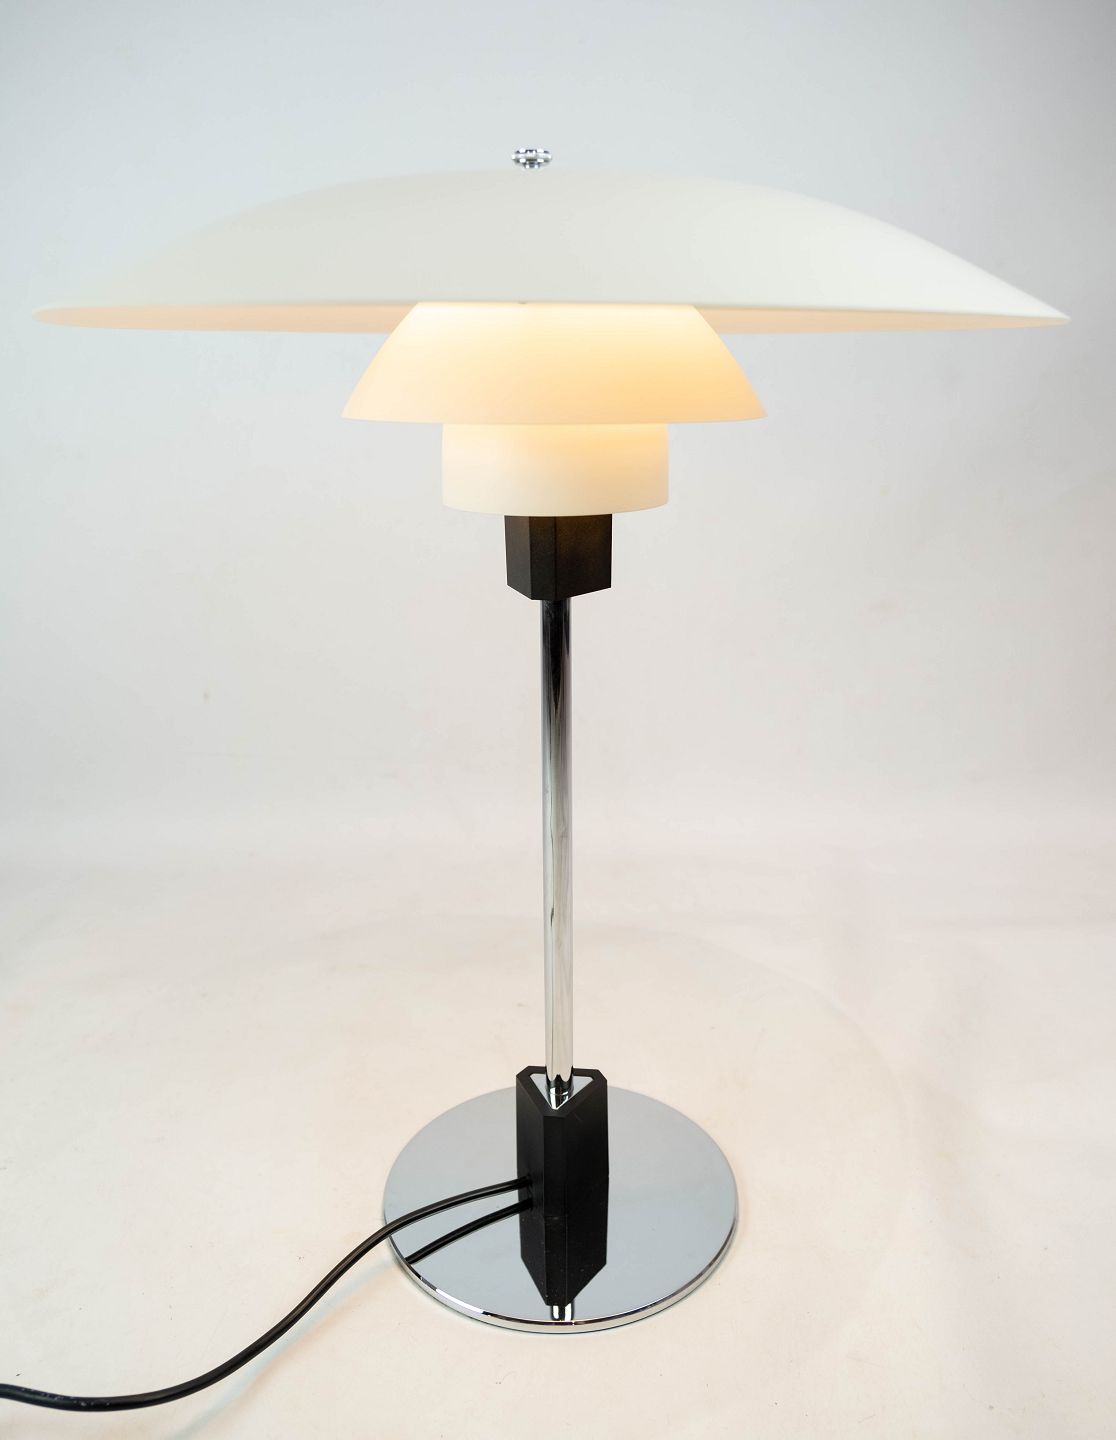 PH 4/3 bordlampe designet af Poul Henningsen og fremstillet hos Louis * - Antik & Design